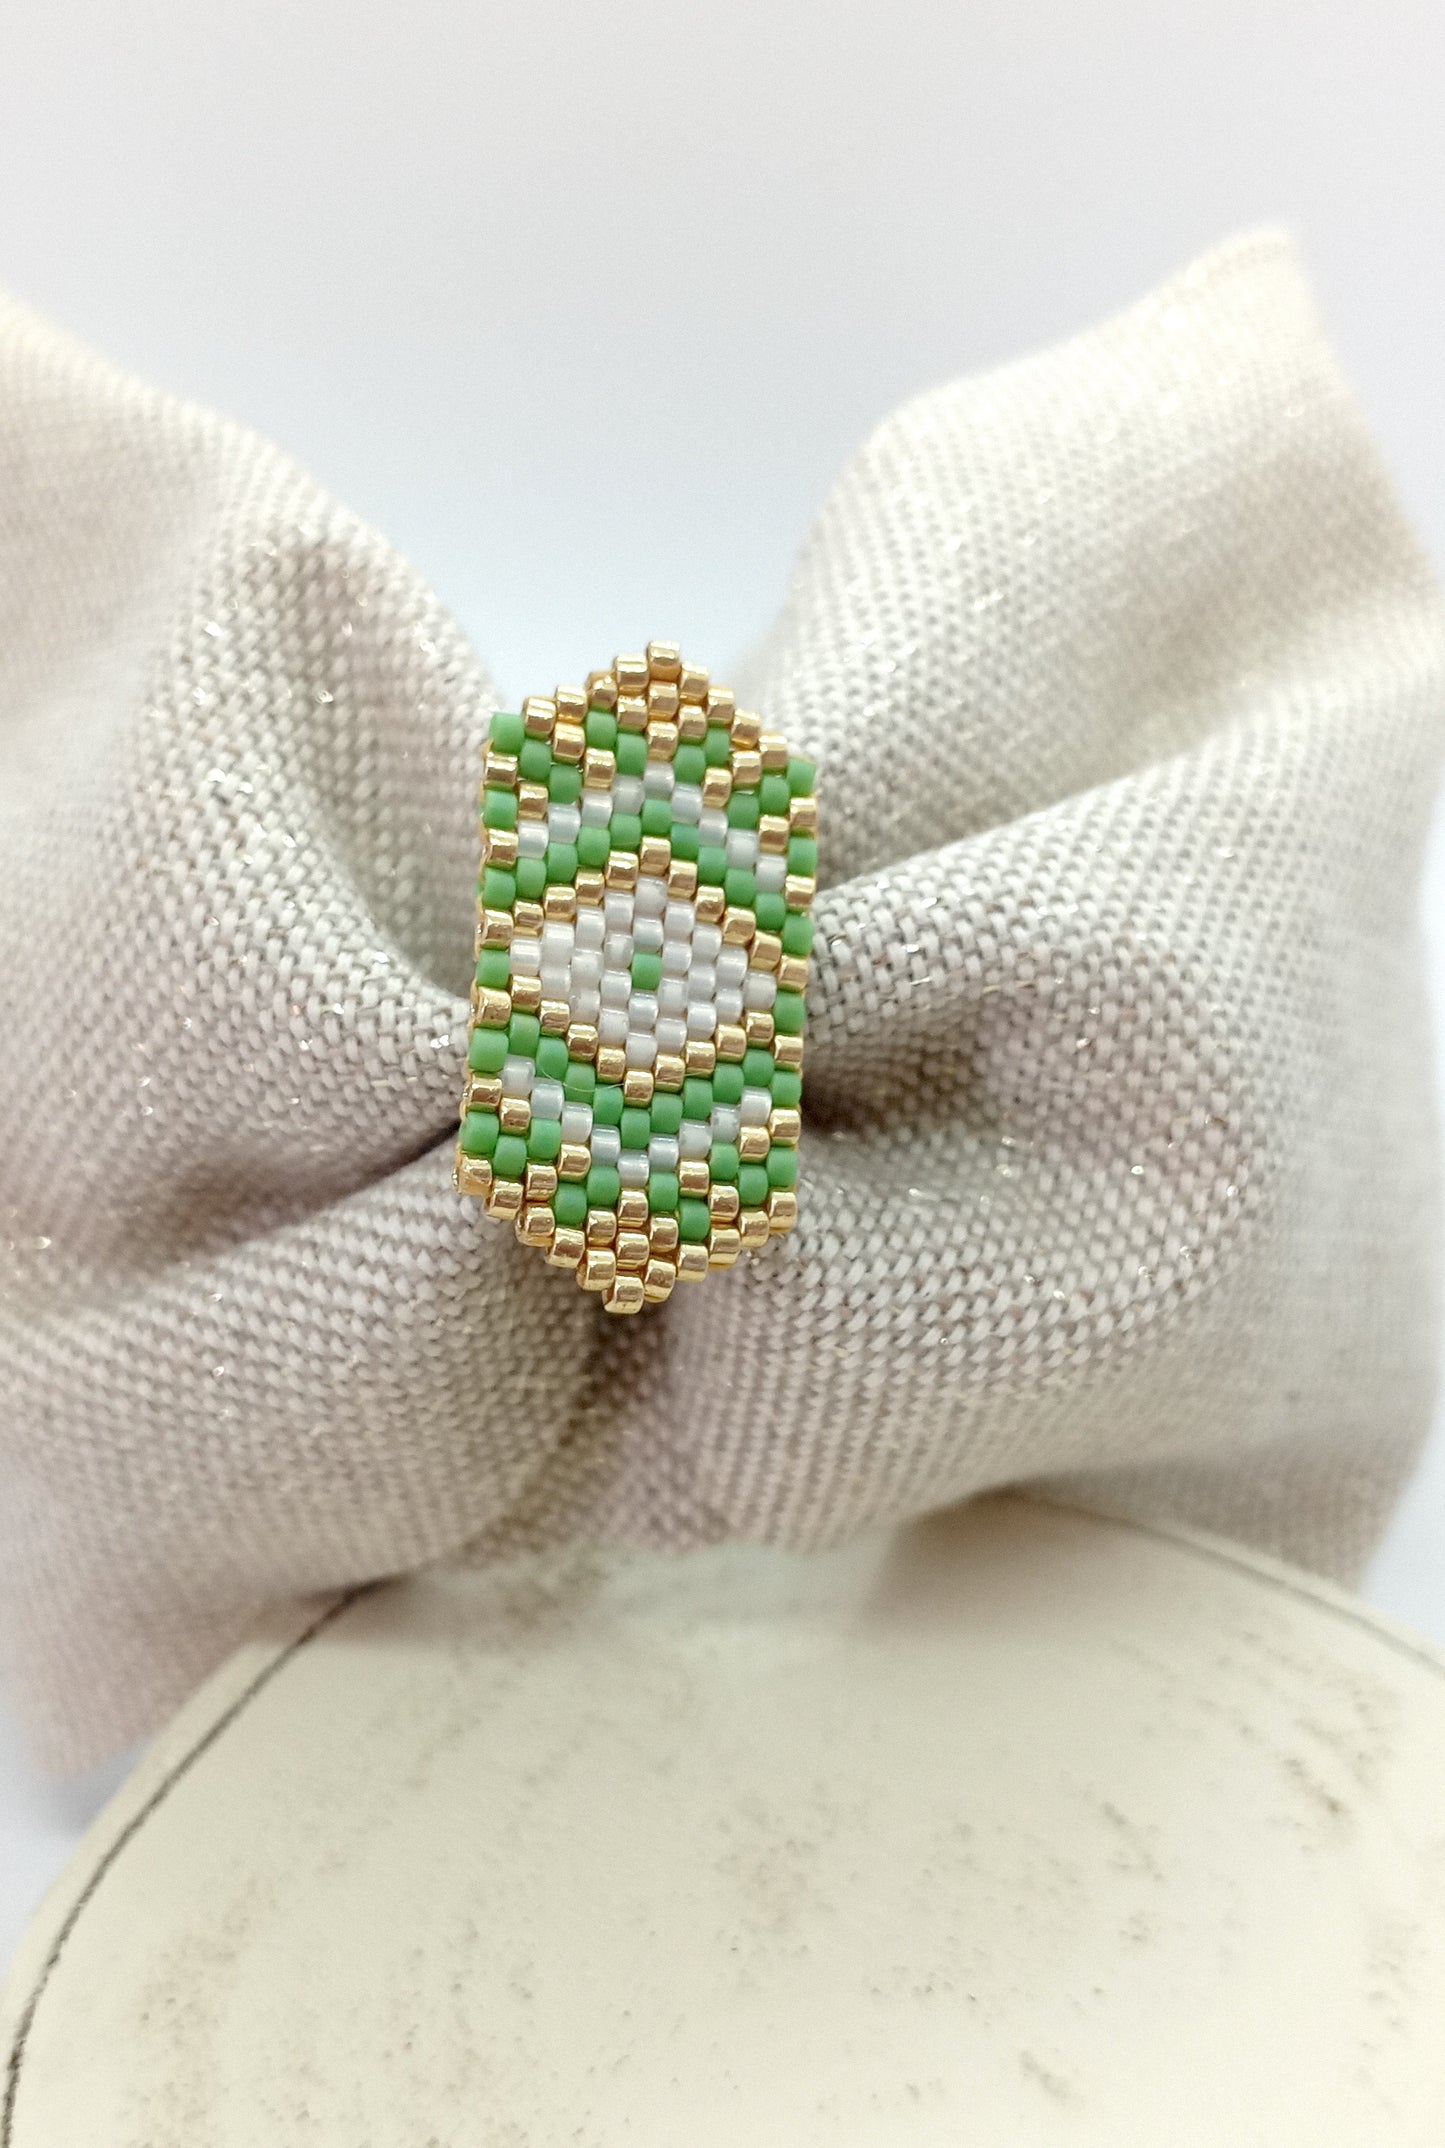 Bandeau en tissu beige irisé et broche en perles tissée verte, blanche et dorée